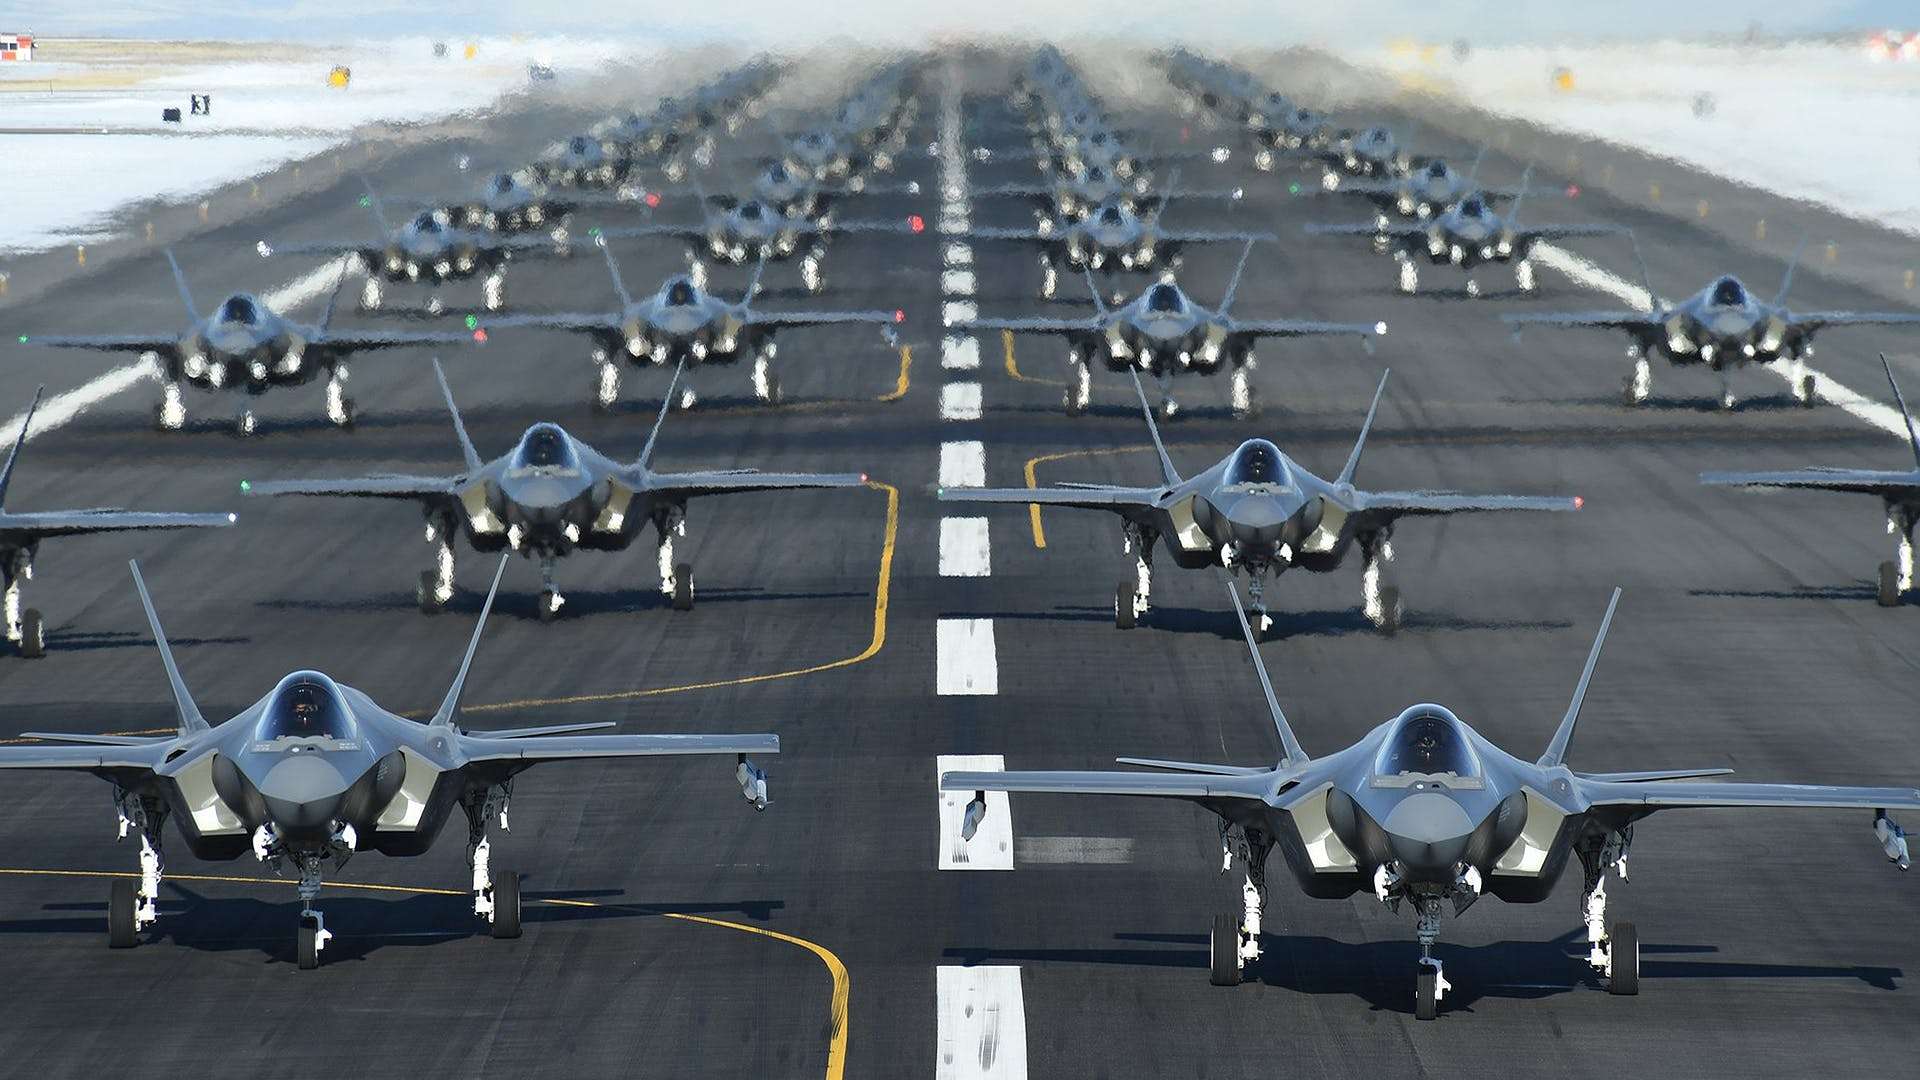   Οι ΗΠΑ δεν ανακοινώνουν την πώληση των F-35 αναμένοντας τις εκλογές στην Τουρκία.